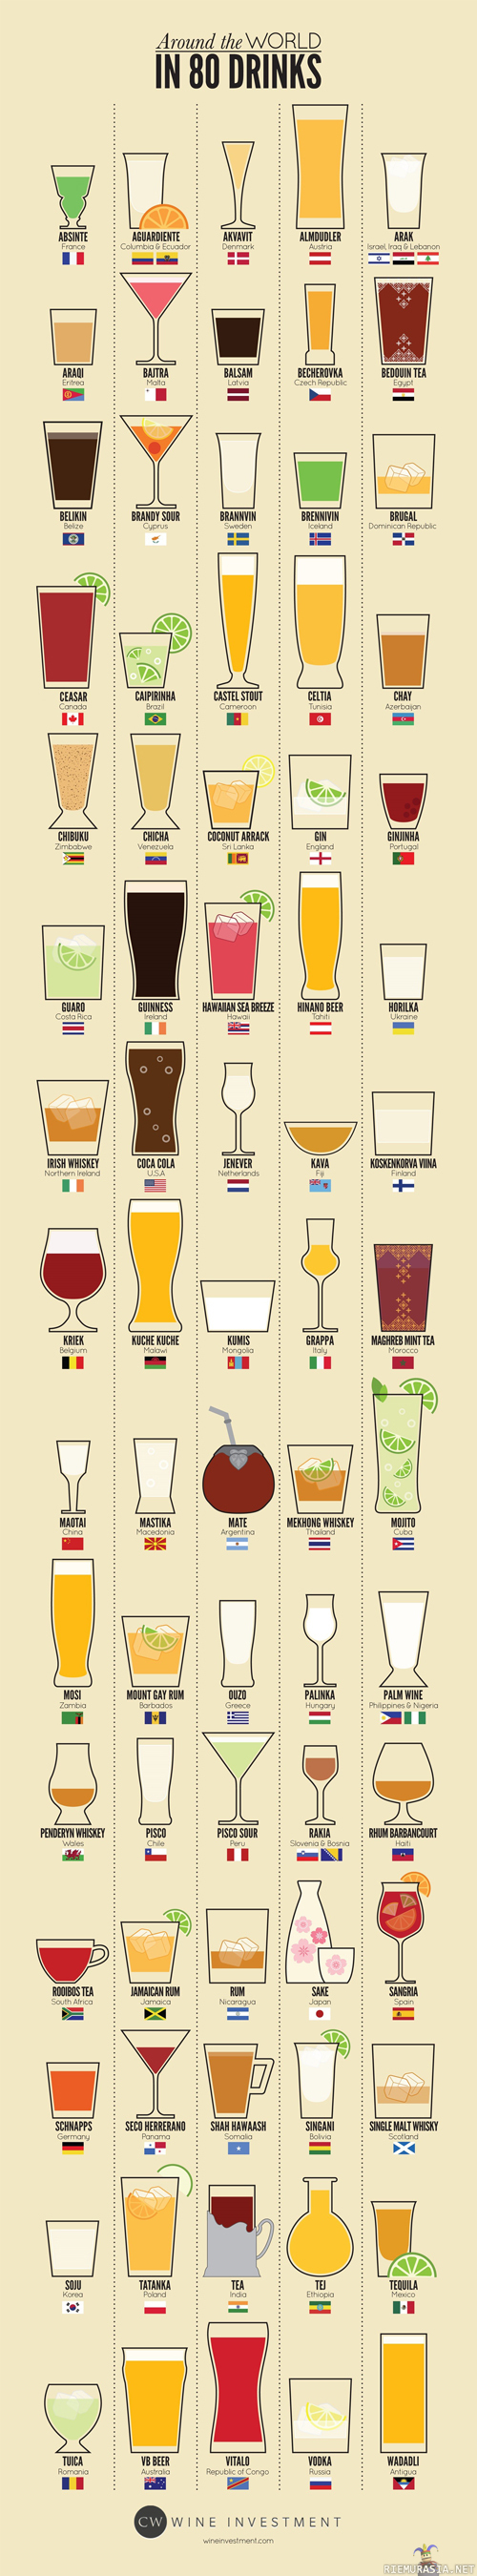 Around the world in 80 drinks - pääsee mualimman ympäri näinkin